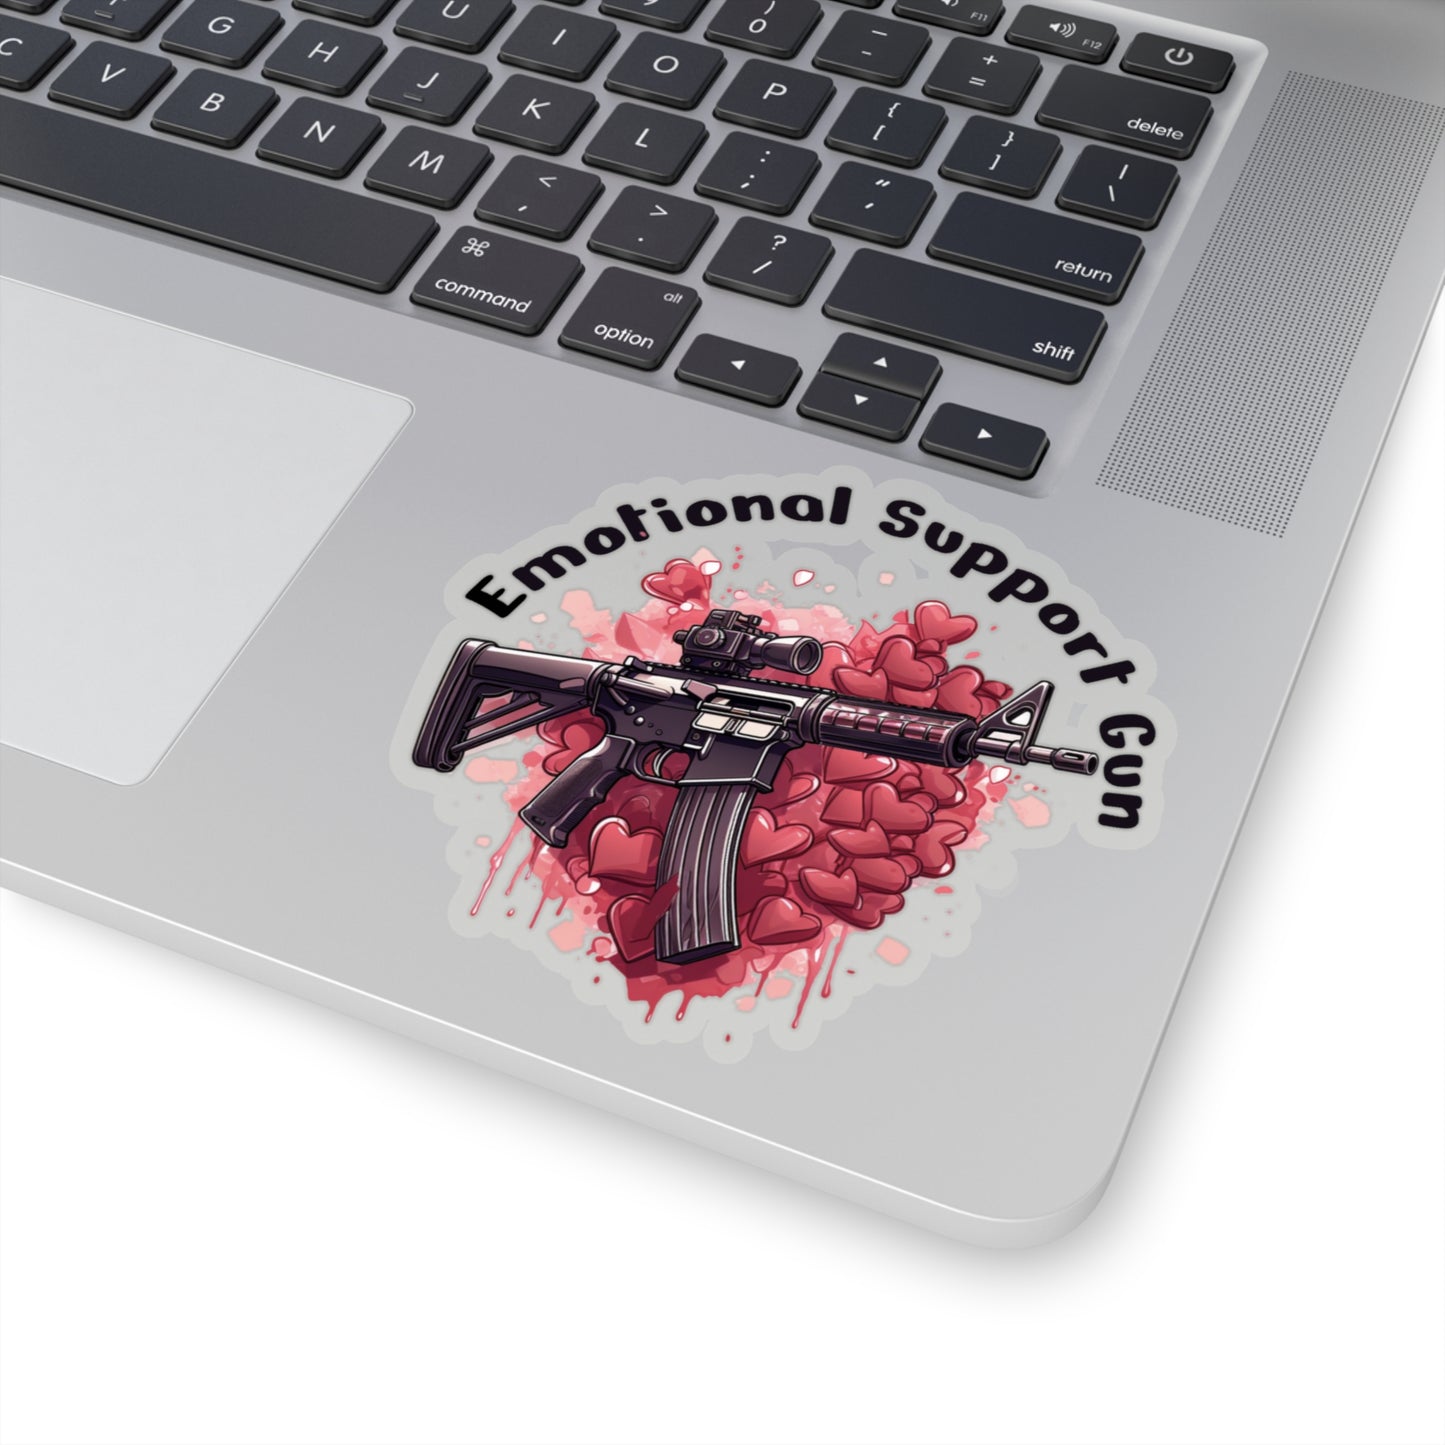 IJ Tactical Emotional Support Gun sticker